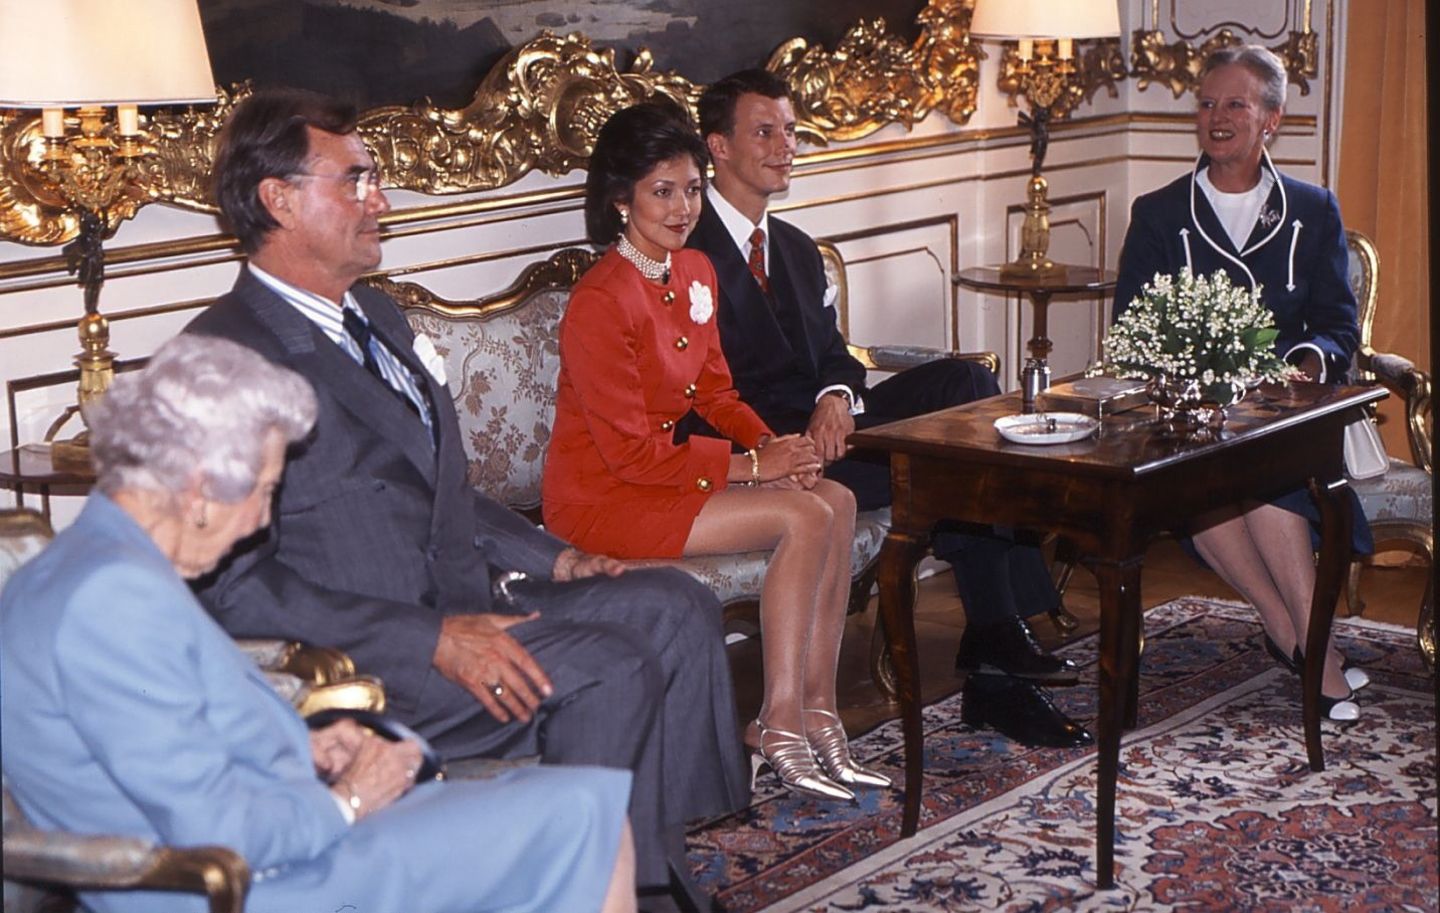 Mai 1995  Prinz Joachim verlobt sich mit Alexandra Manley: Seine Mutter, sein Vater und seine Großmutter sind dabei, als das Paar sich aus diesem Anlass der Presse zeigt.   Die Ehe, aus der die beiden ersten Enkelkinder von Königin Margrethe hervorgehen, endet 2005 mit der Scheidung.